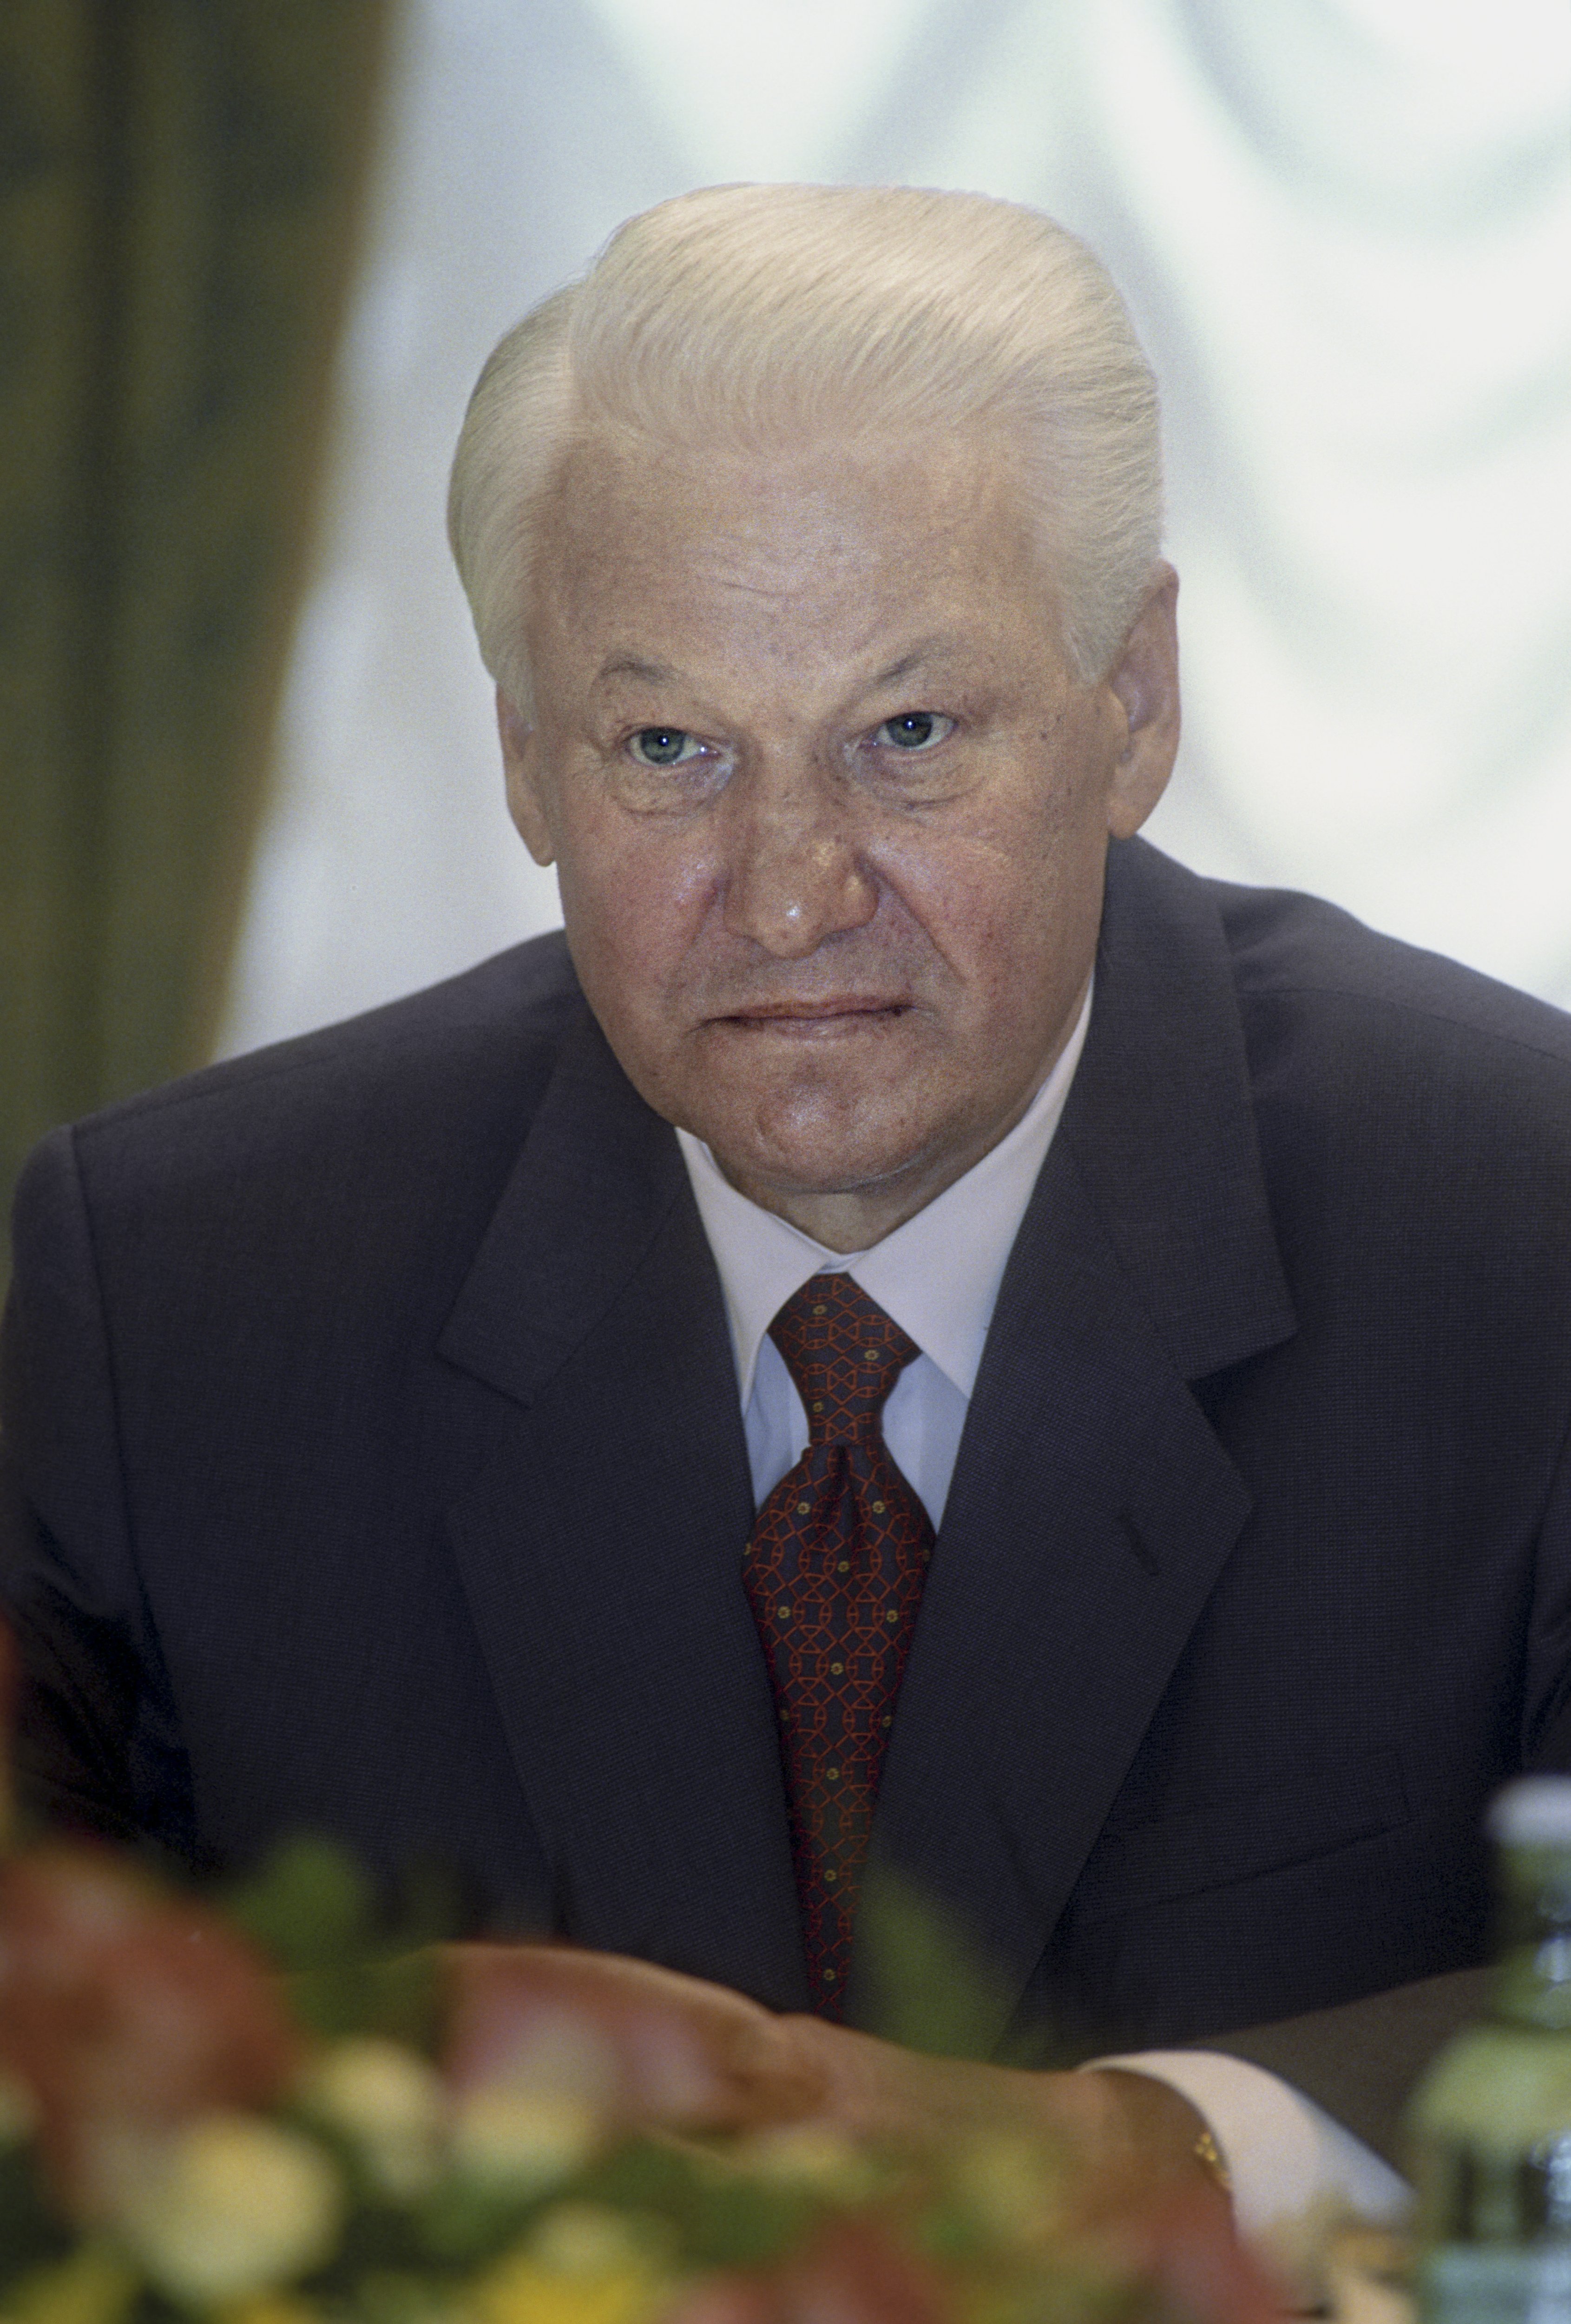 Yeltsin Boris